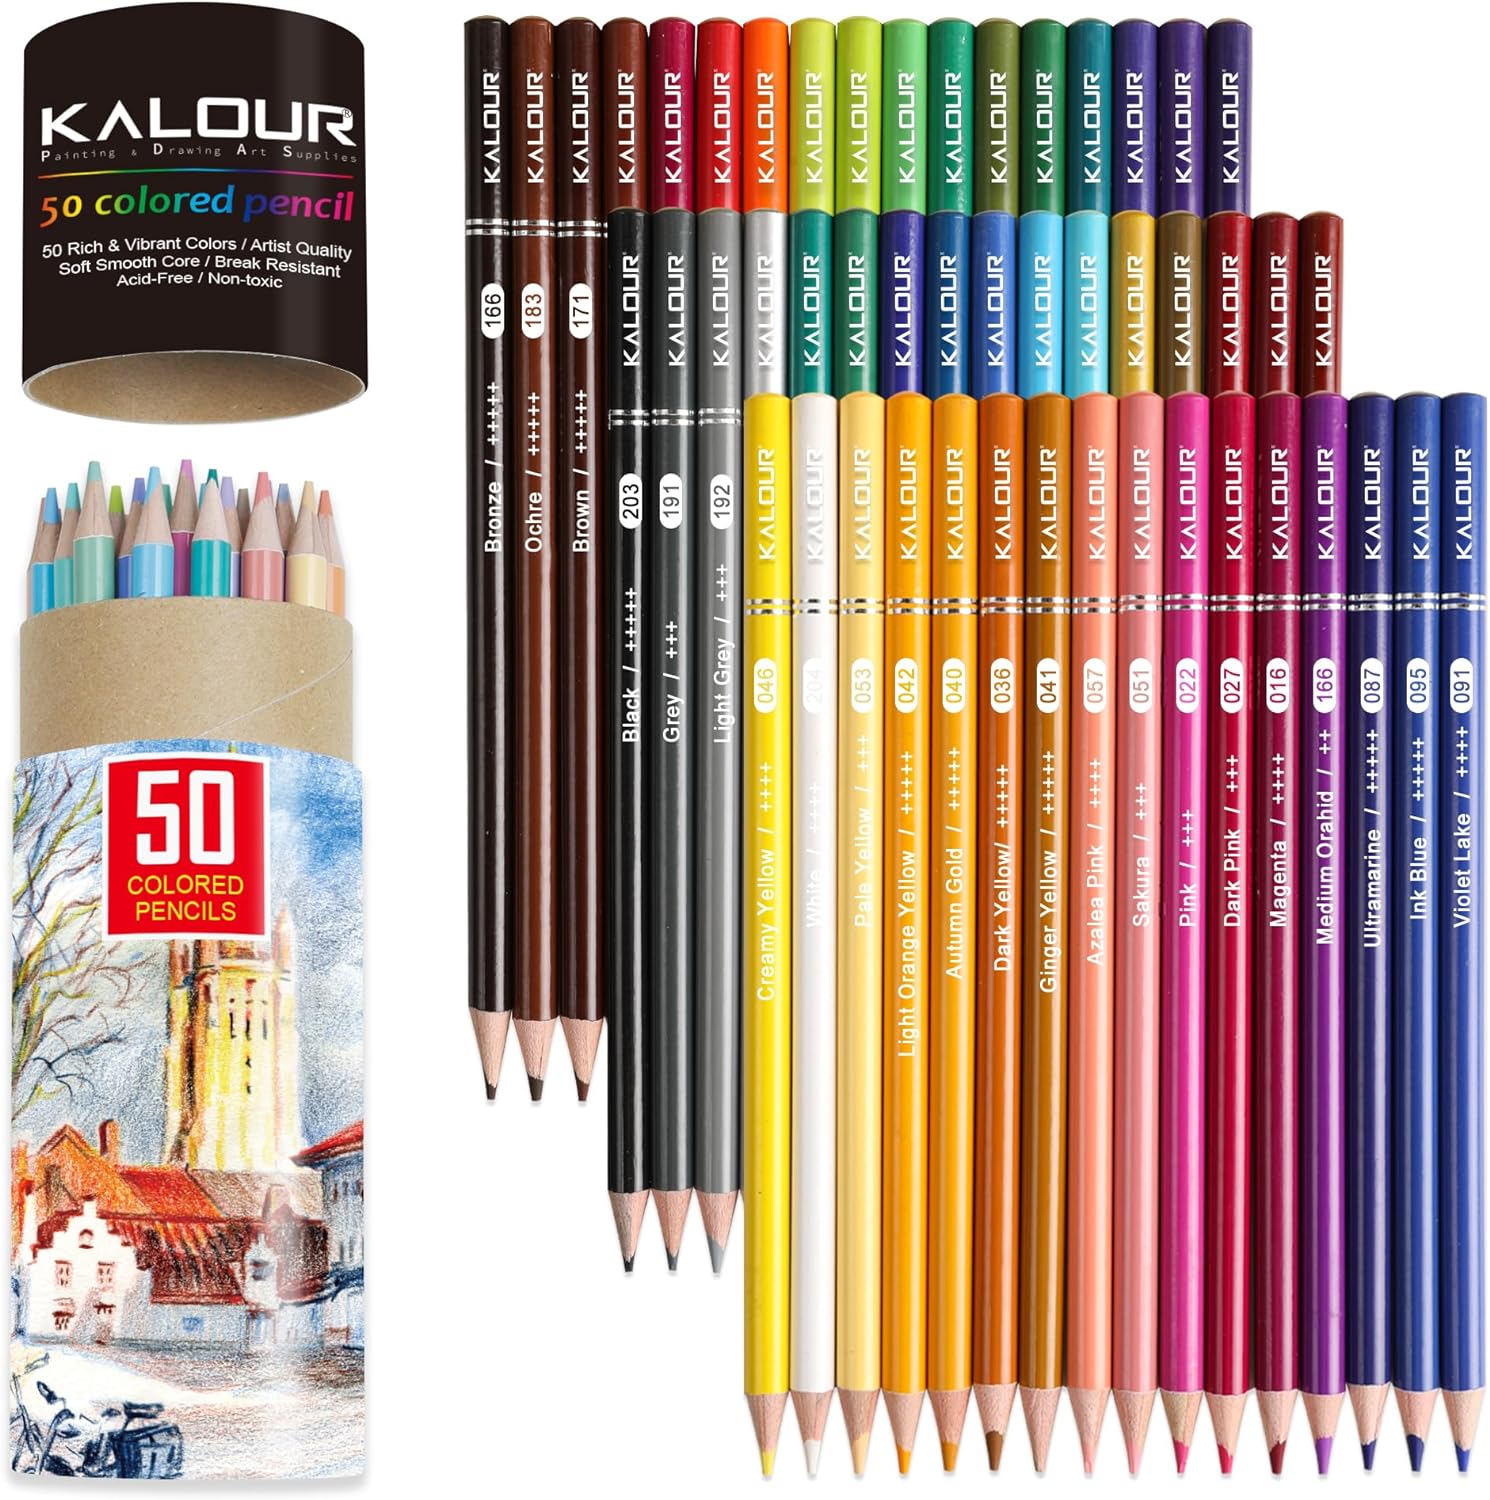  KALOUR Premium Colored Pencils,Set of 72 Colors